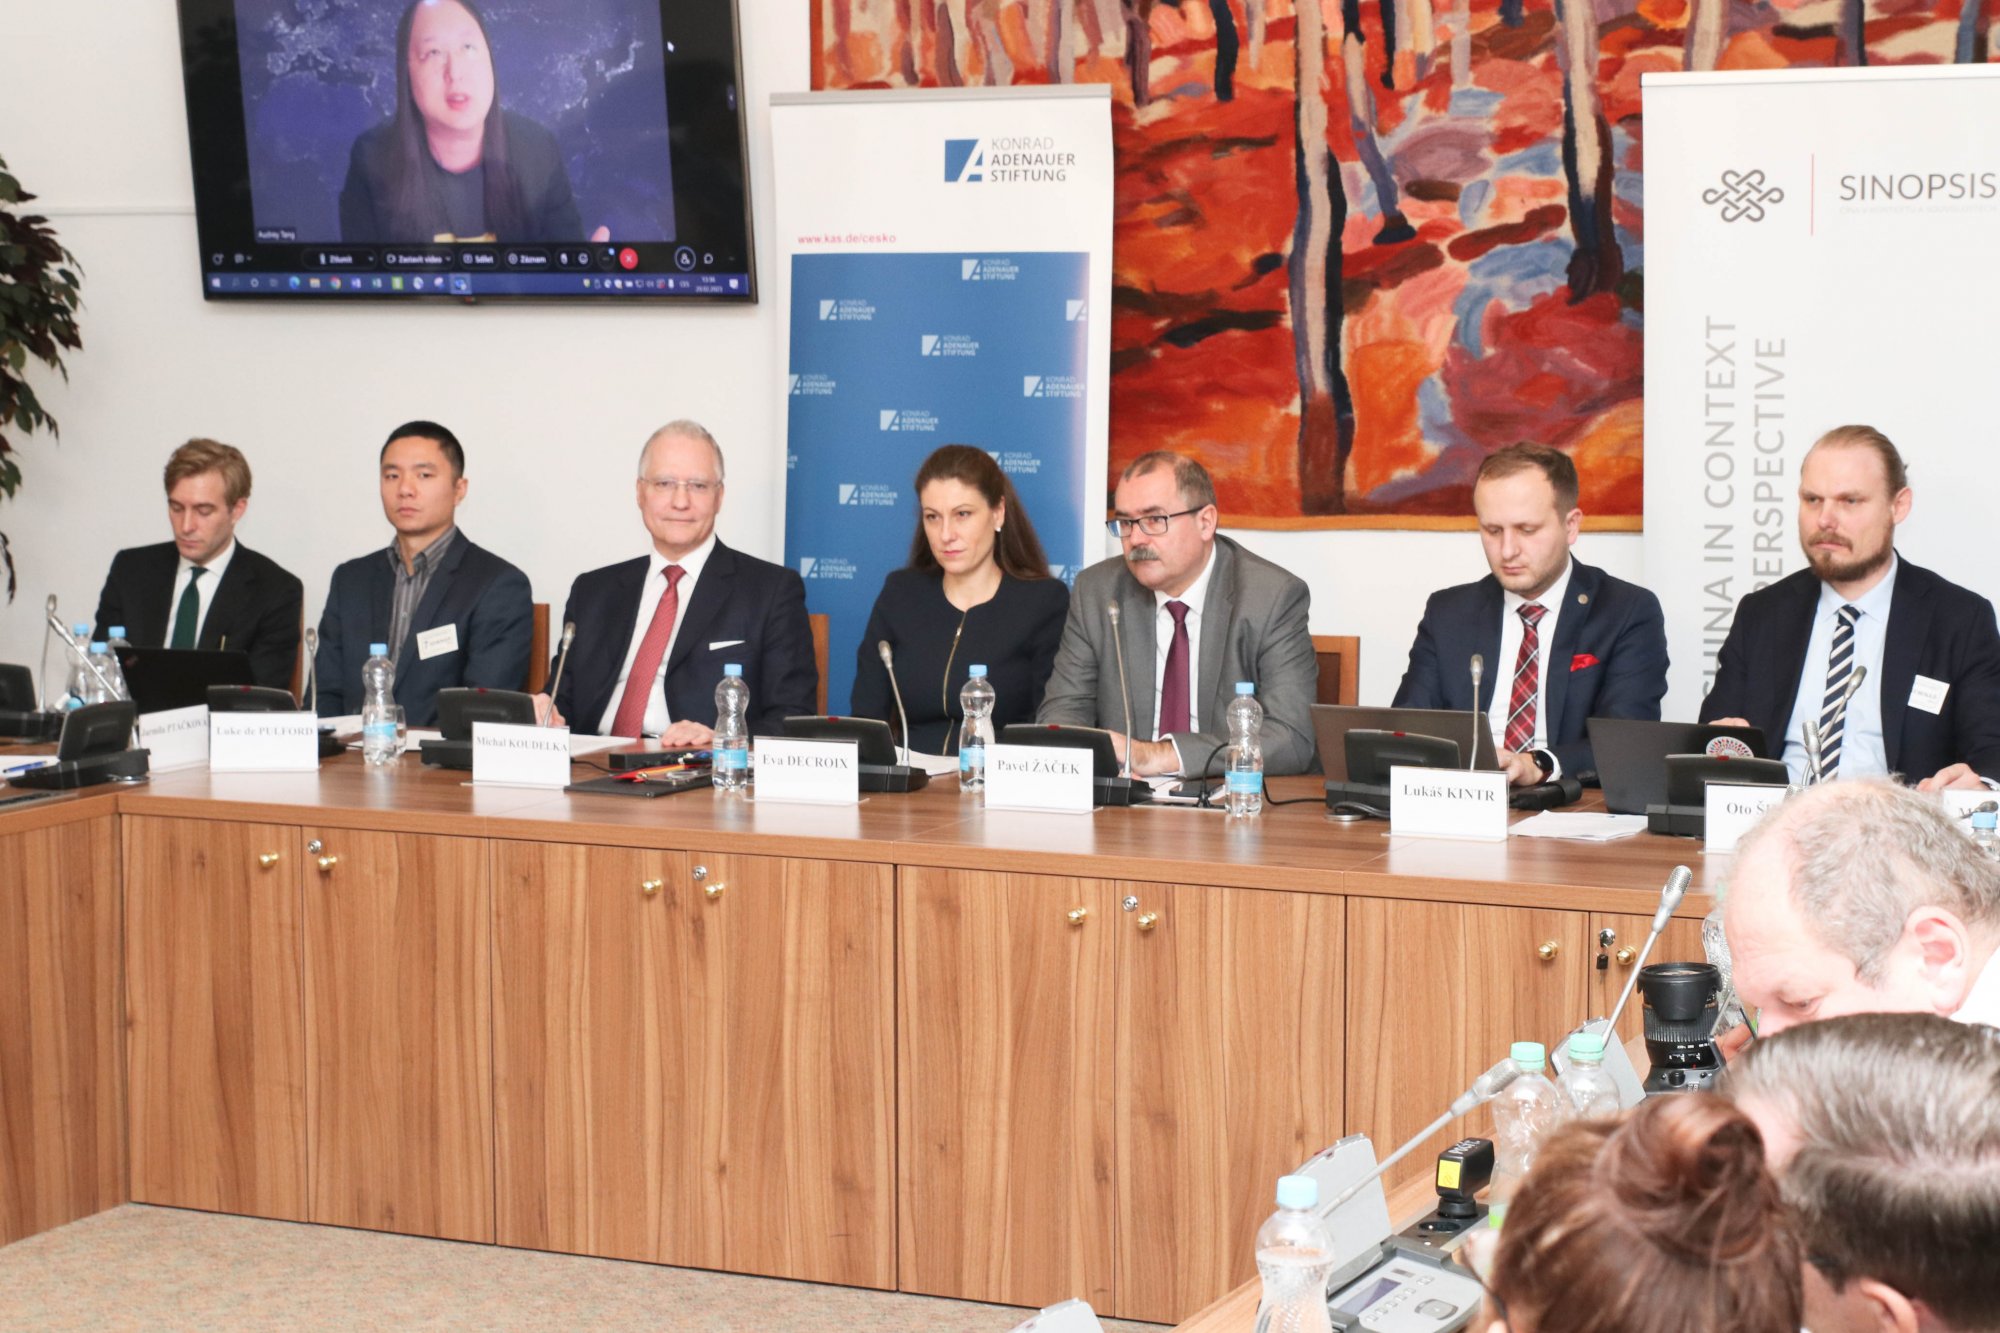 „Vztahy s Čínou v uplynulém desetiletí “, řešili poslanci a experti na konferenci projektu Sinopsis a výborů Parlamentu ČR